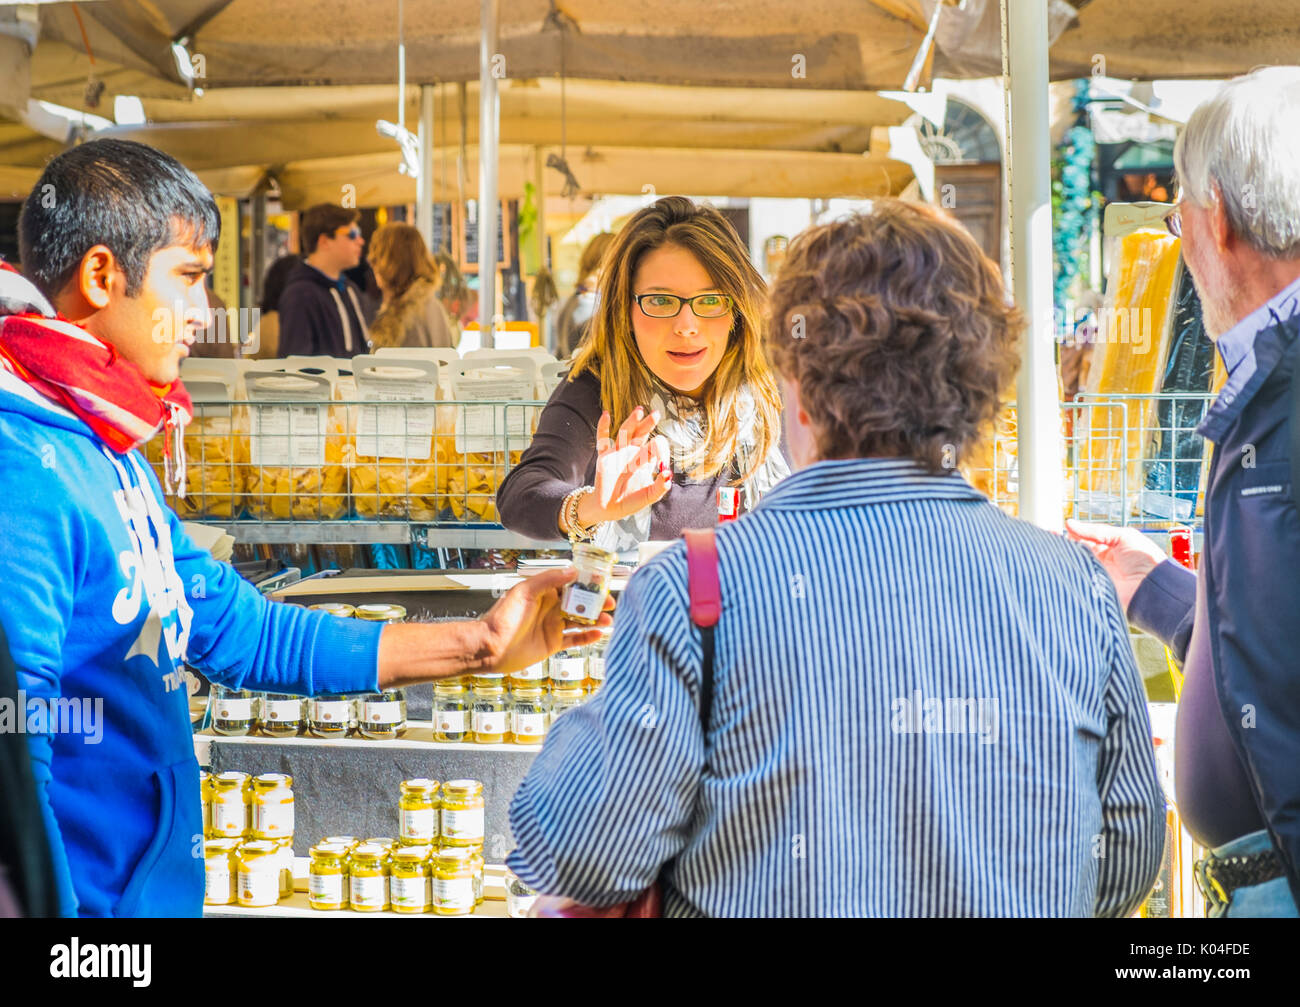 vendor at camo dei fiori market selling scecialities Stock Photo